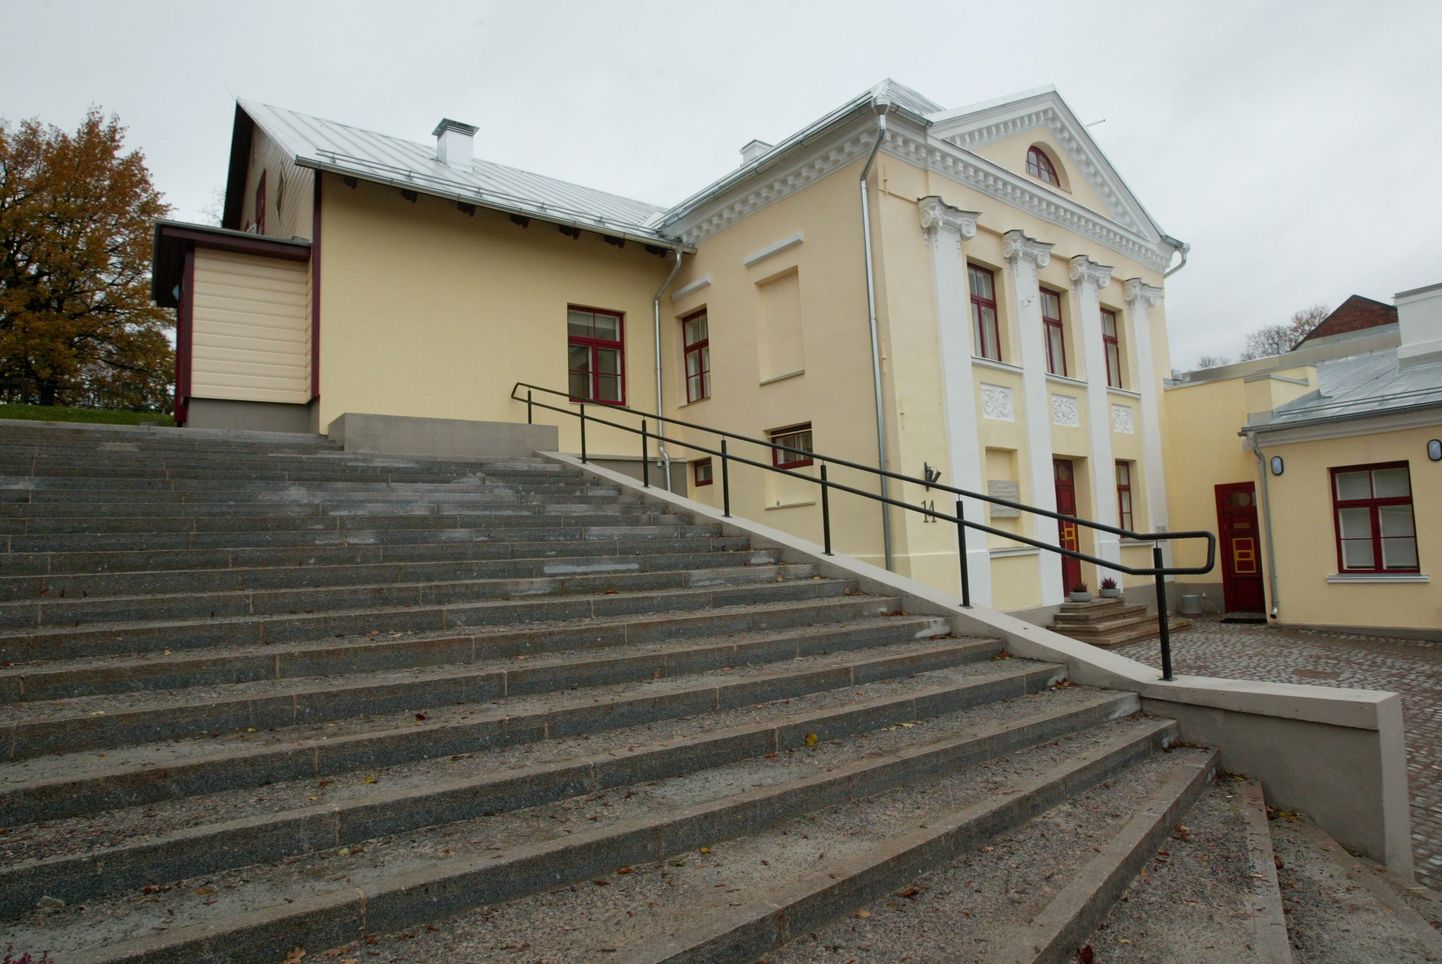 Pildil Vanemuise vana maja Jaama 14, mis on tänasel päeval Tartu laulupeomuuseumi käsutuses.